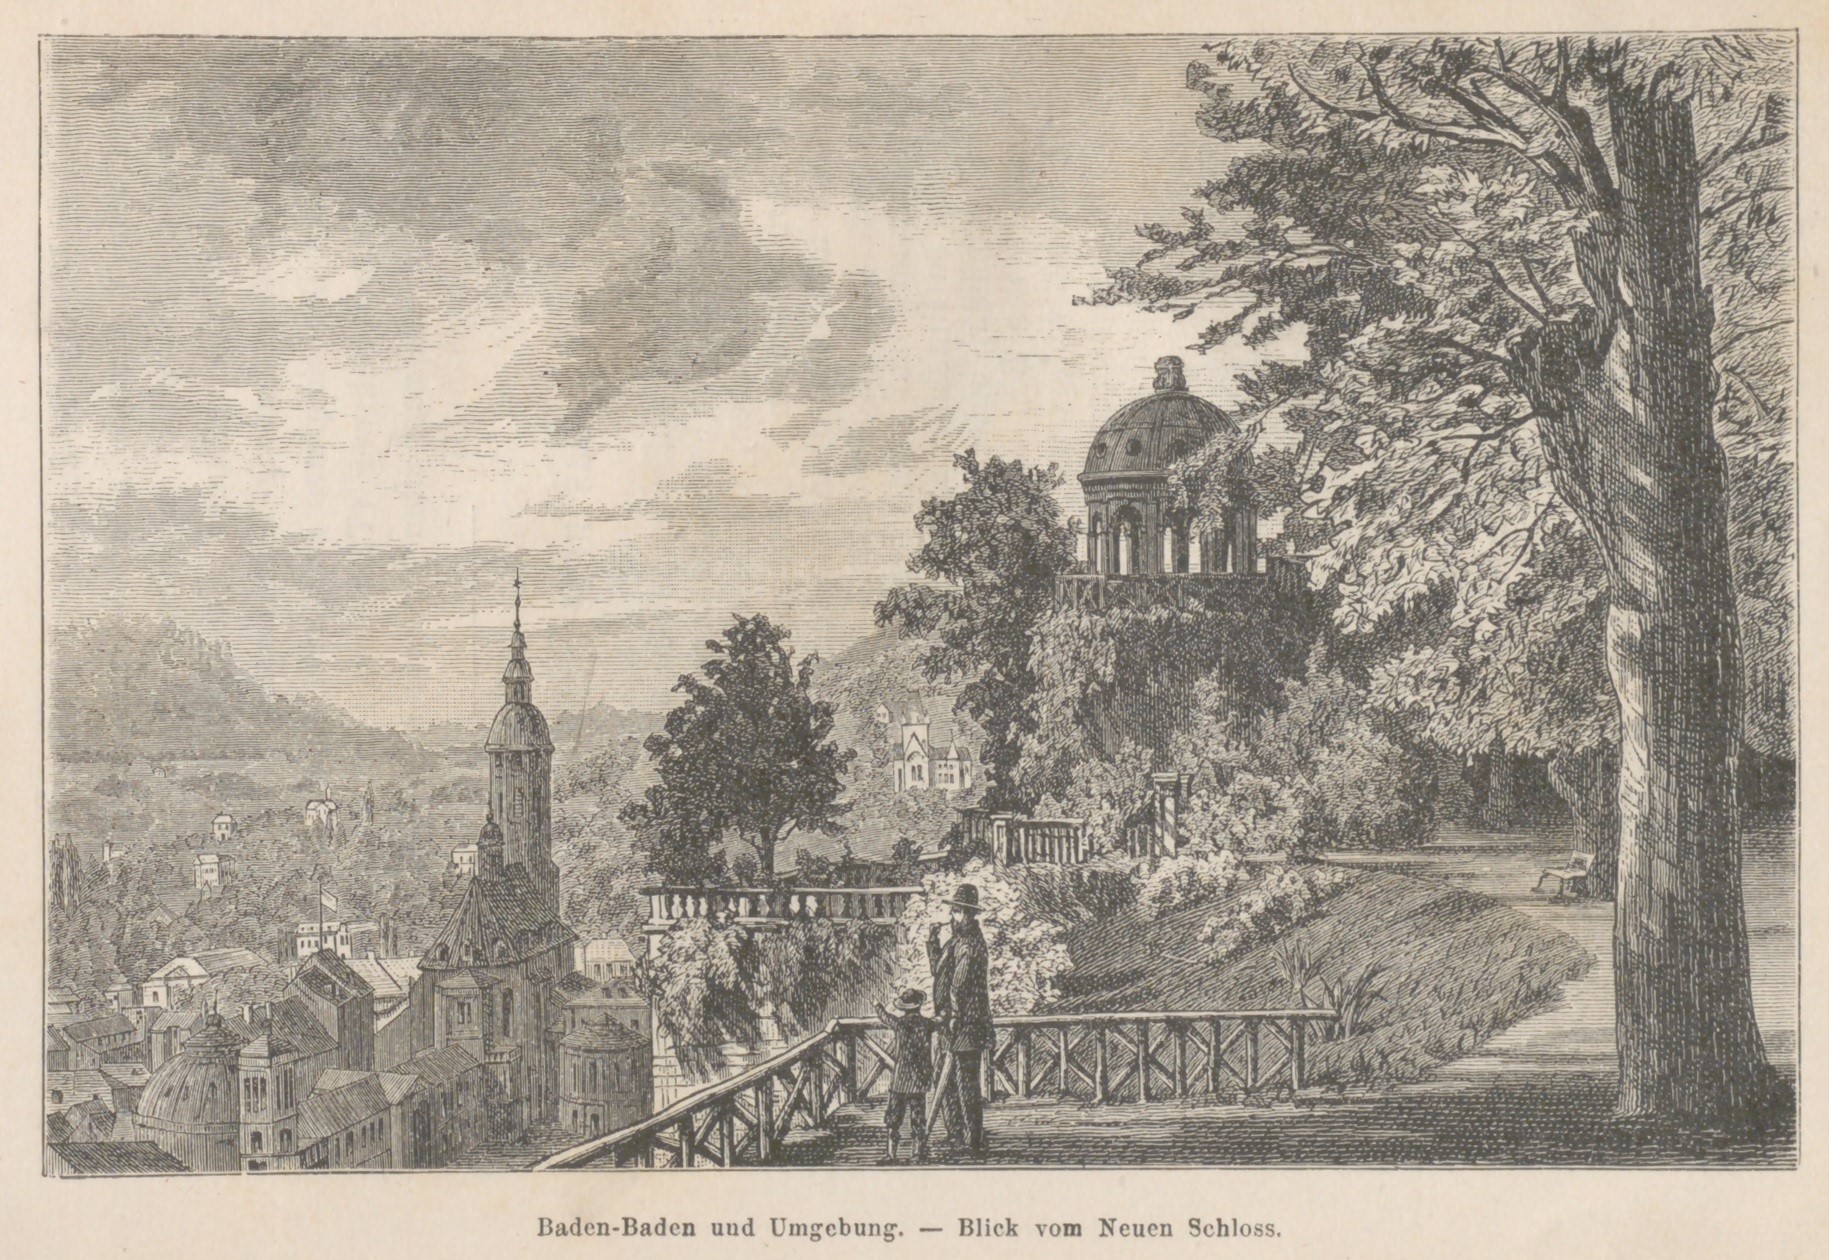 Das Bild zeigt den Blick vom Neuen Schloss aus auf Baden-Baden und die Umgebung.